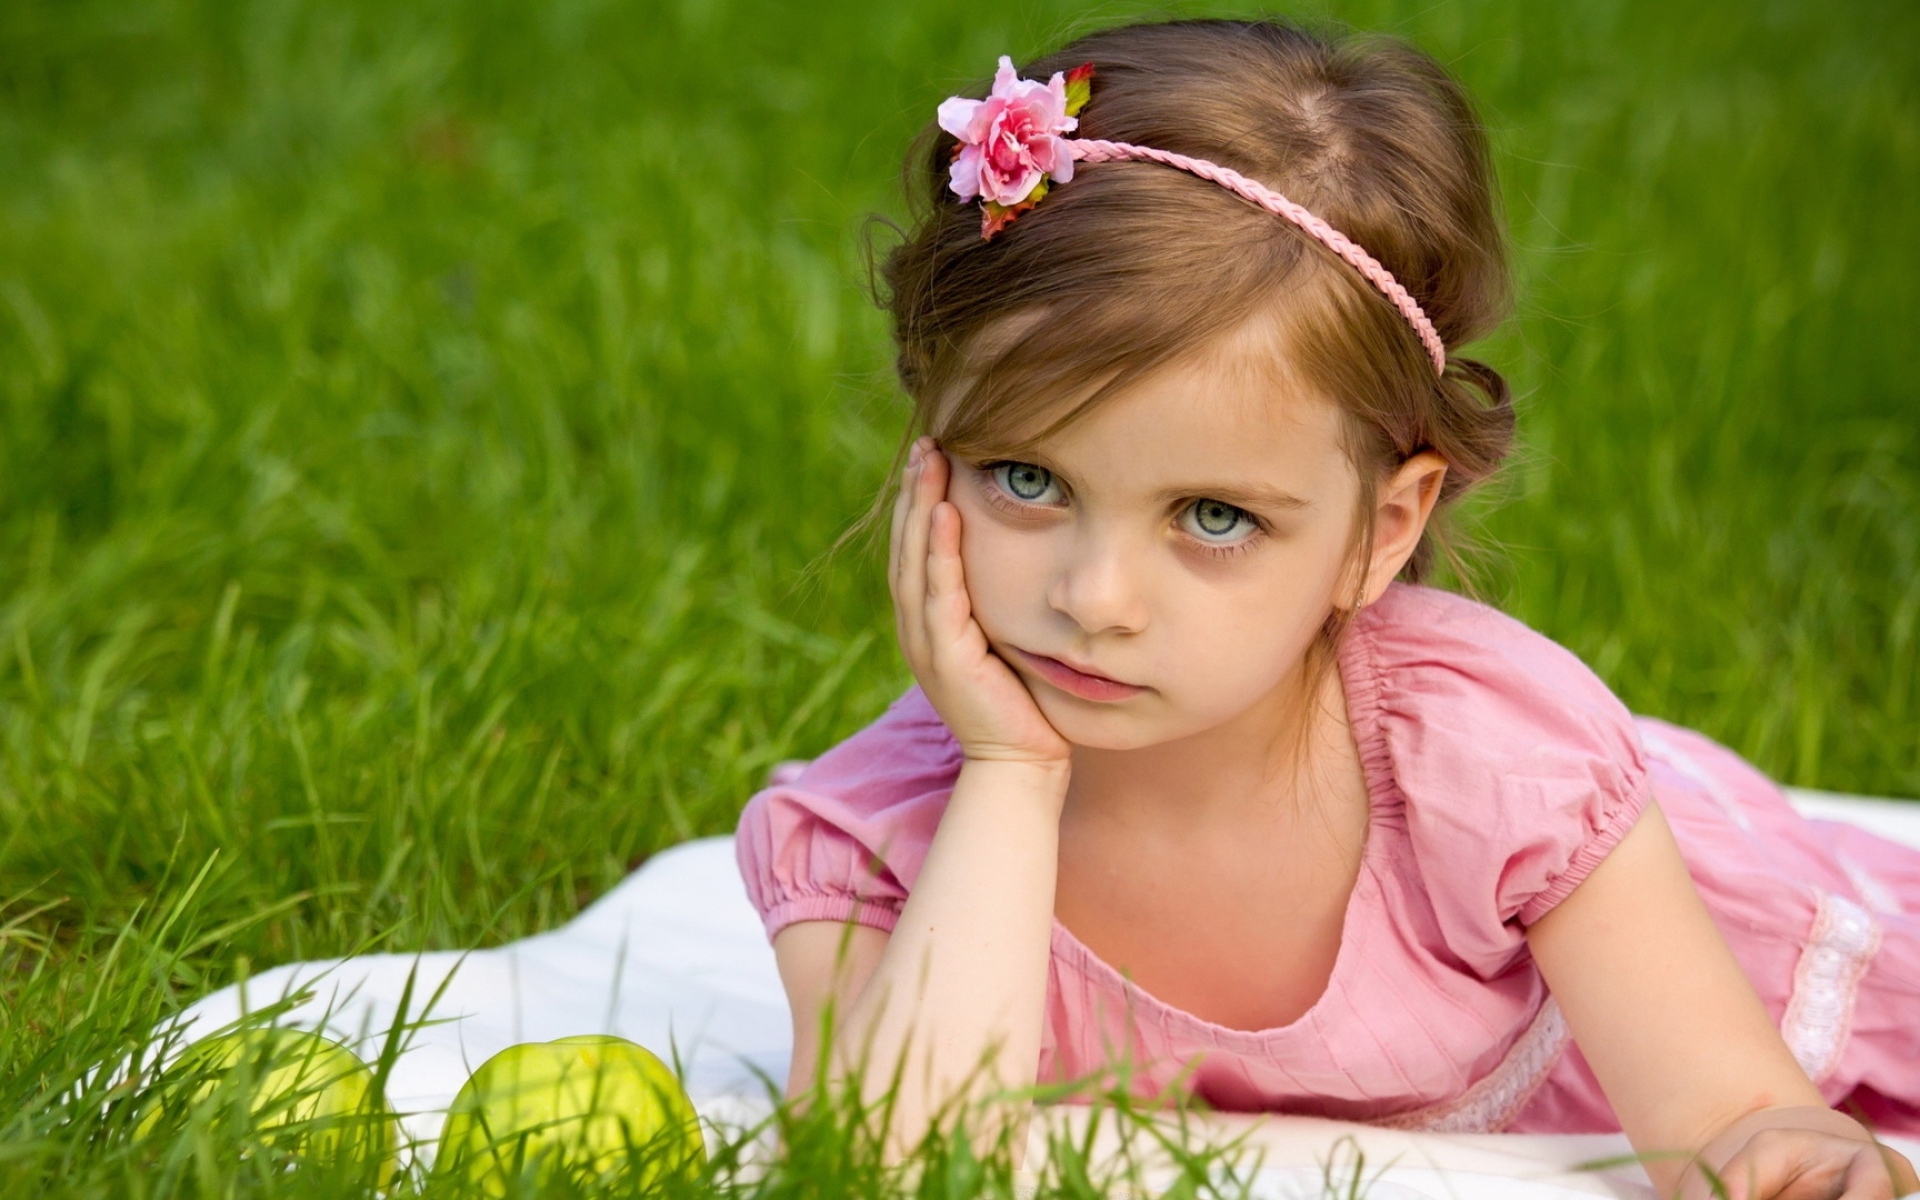 Картинки Девушка, ребенок, яблоки, трава, ложь, недовольство фото и обои на рабочий стол